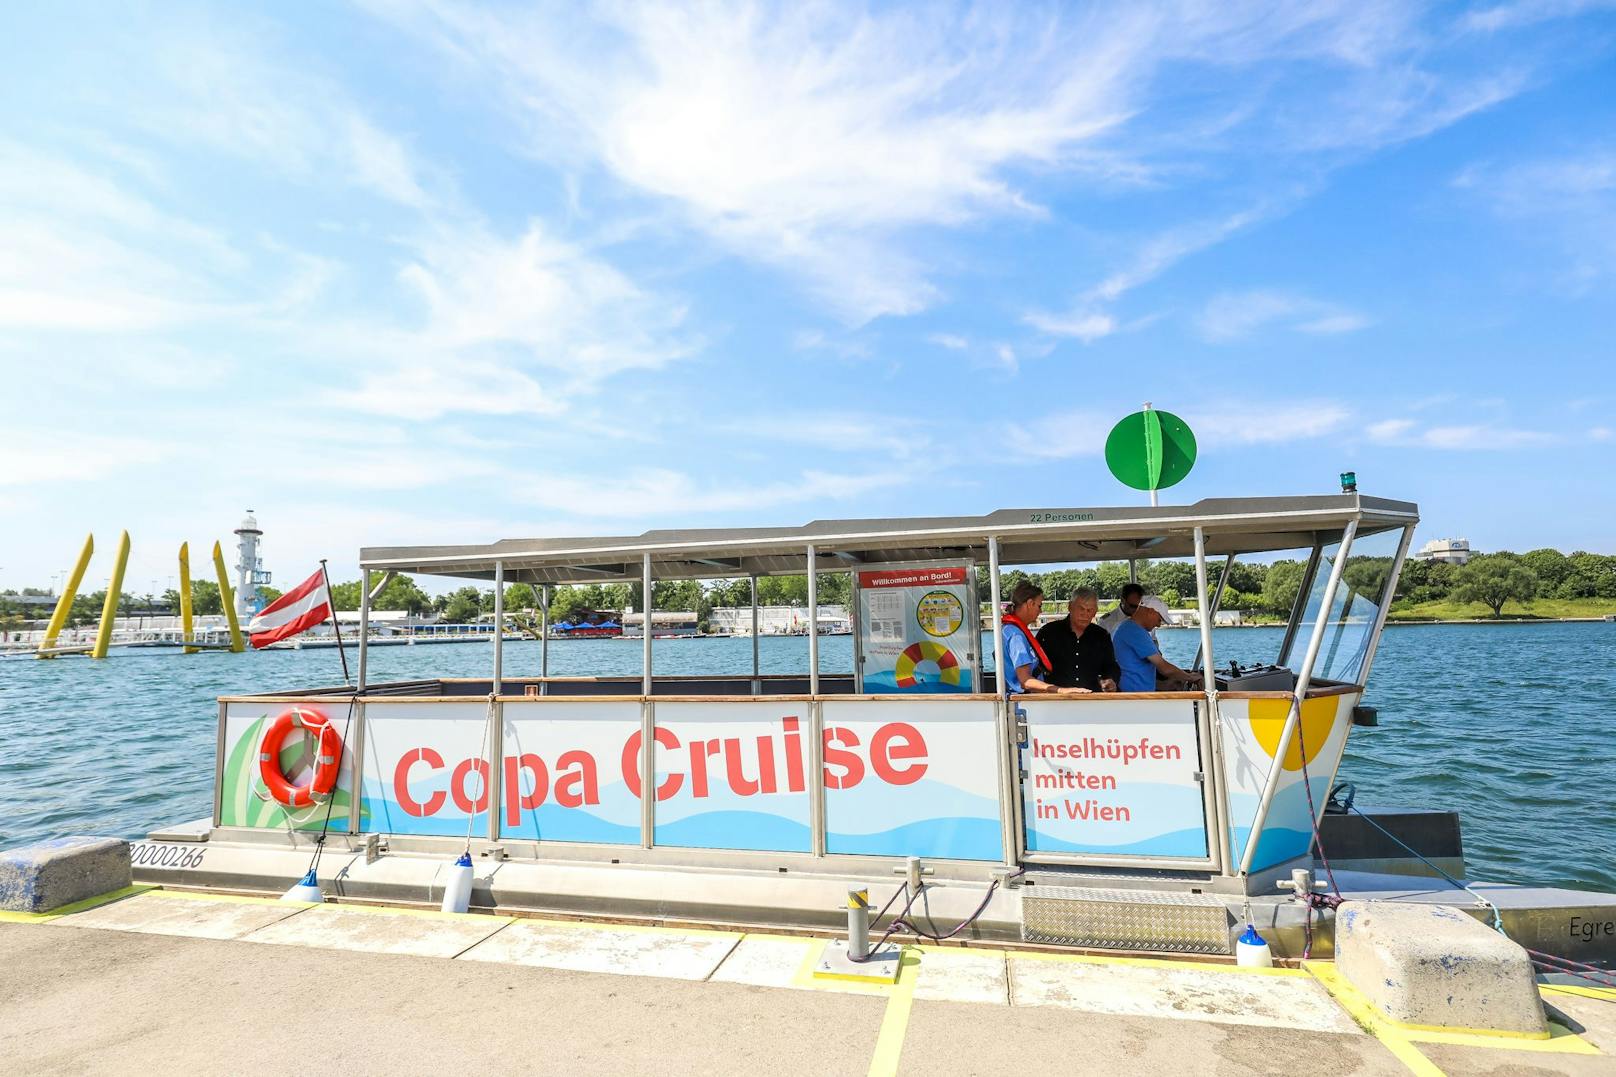 "Inselhüpfen in Wien": Mit der "Copa Cruise" ist Wiens erstes "Öffi-Boot" während des Sommers auf der Donau unterwegs.